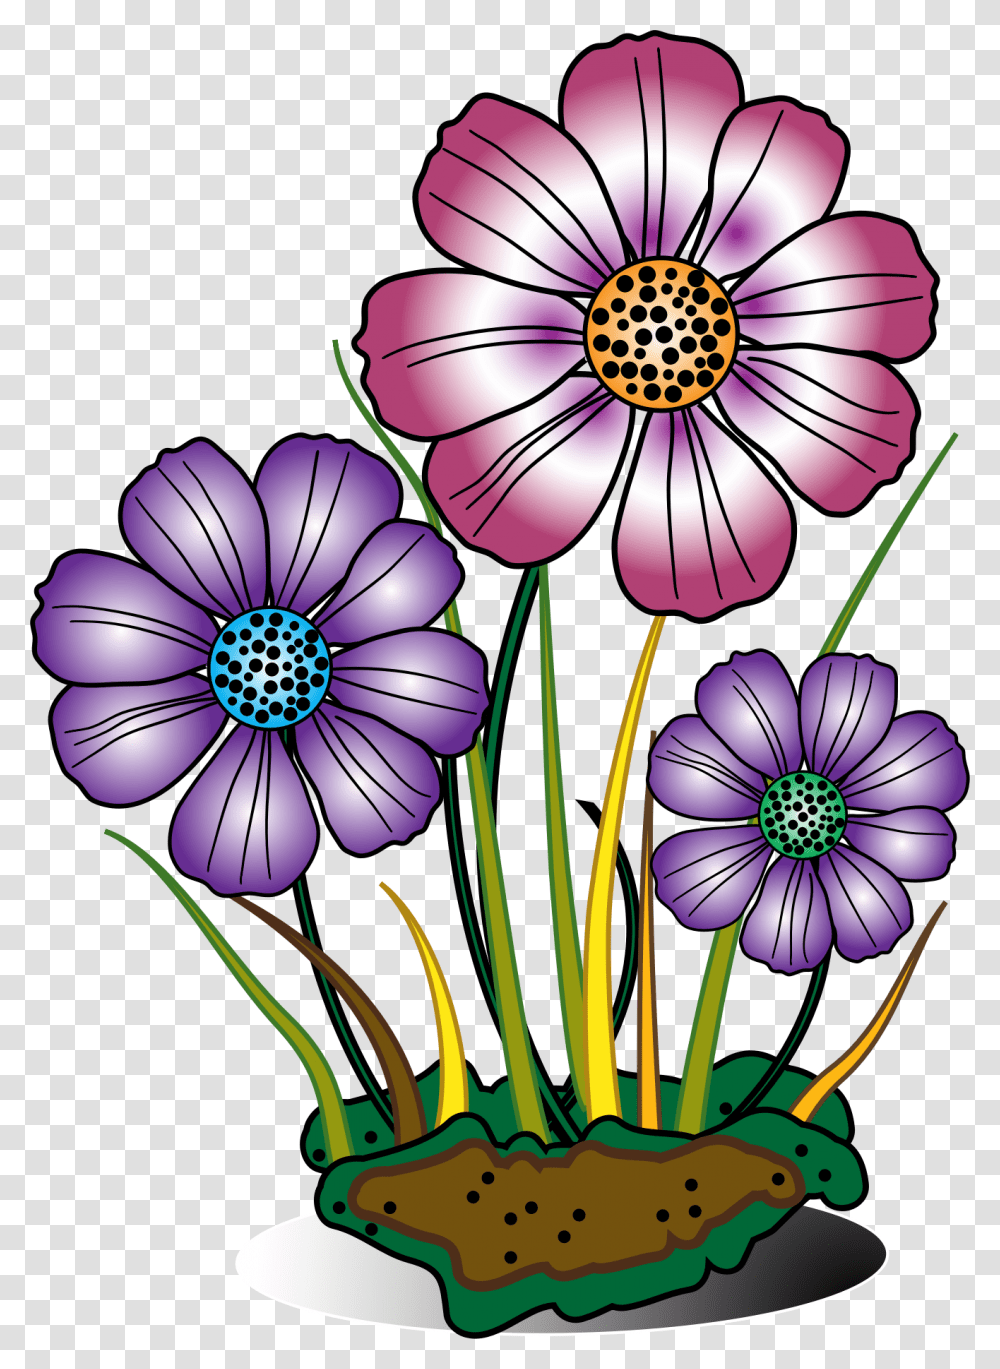 Cute Flower Clipart Free, Plant, Purple, Petal, Blossom Transparent Png